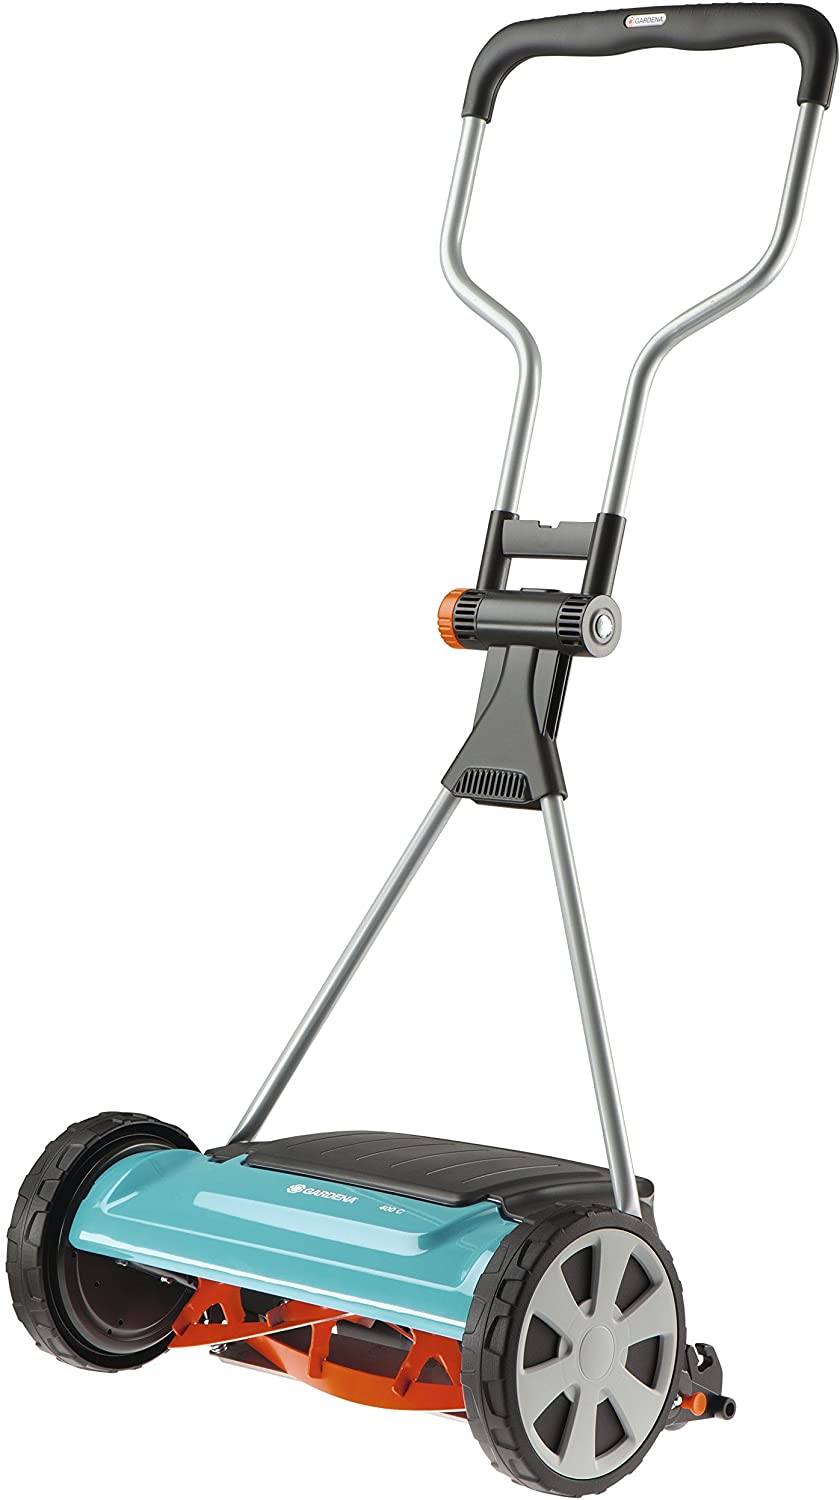 gardena-comfort-400c-manual-lawn-mower.jpg